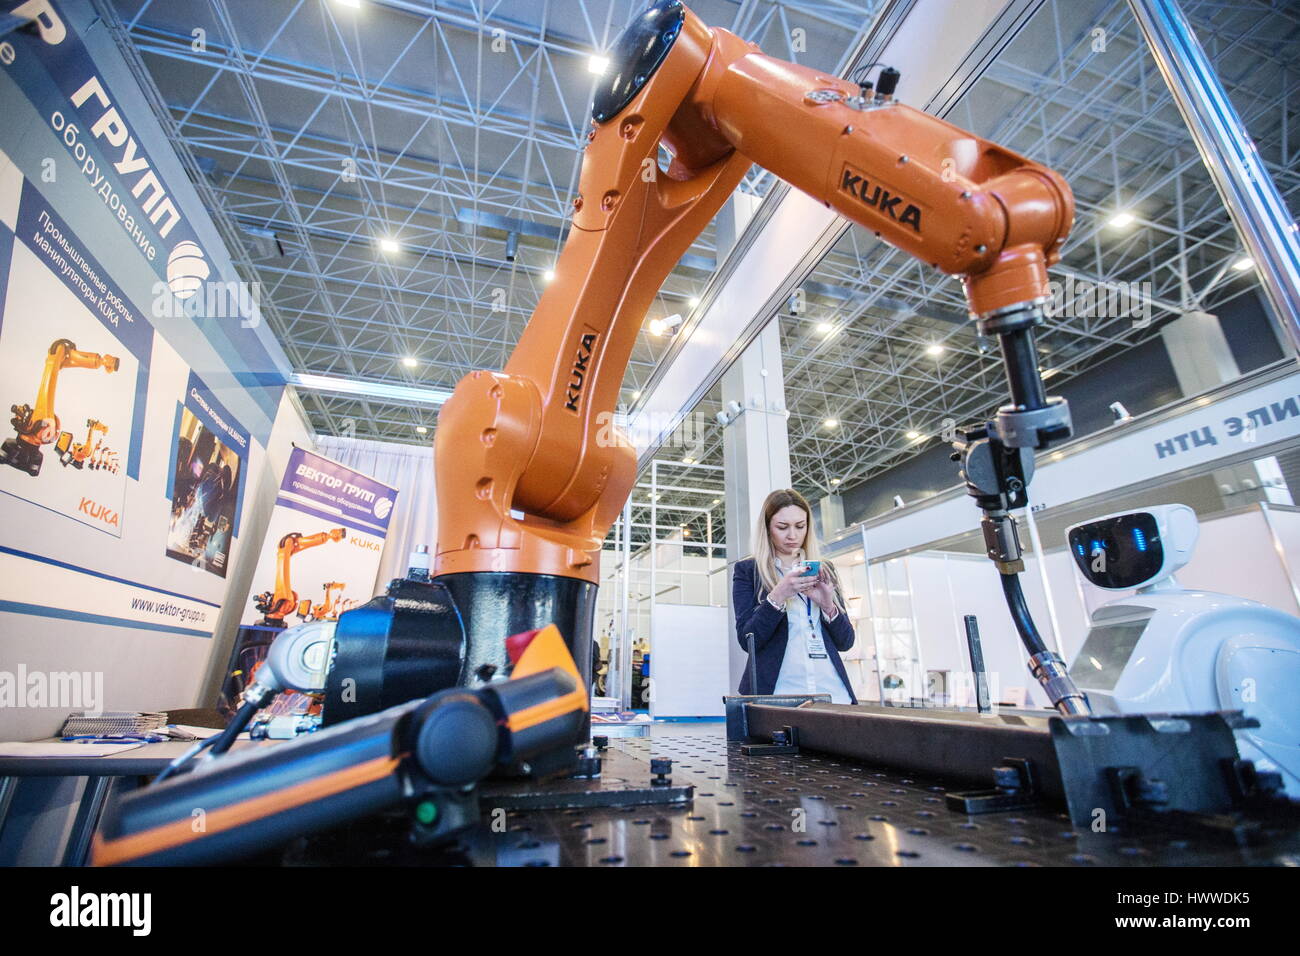 Виды промышленных роботов их назначение. Кука Роботикс манипулятор. Промышленный робот манипулятор. Робототехника промышленные роботы. Робот манипулятор на заводе.